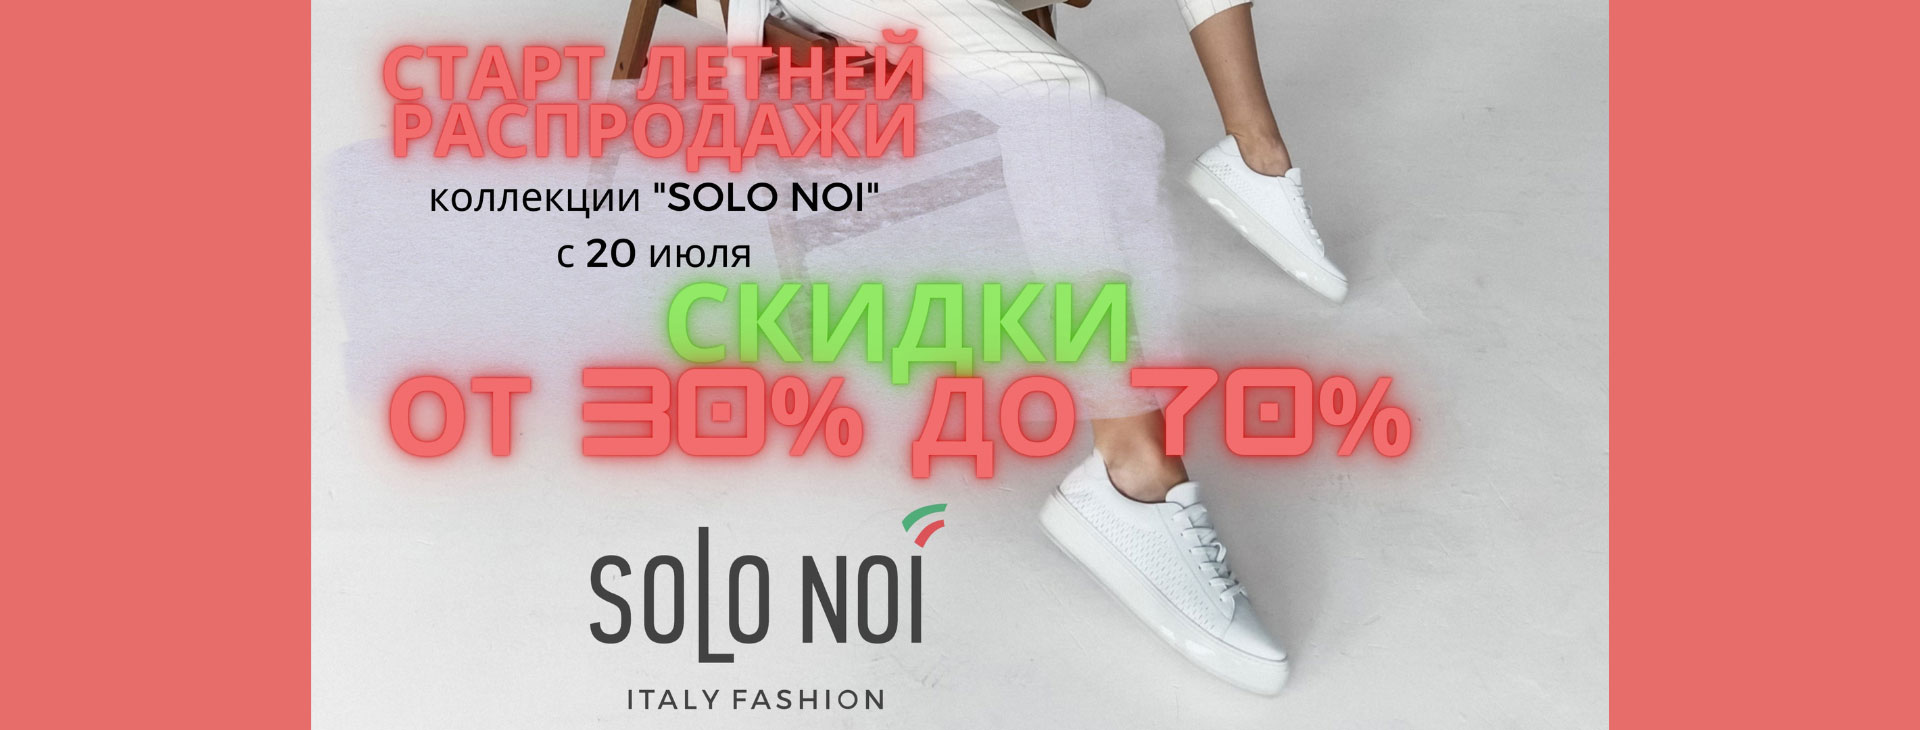 Объявляем старт летней распродажи коллекции «SOLO NOI» с 20 июля! 